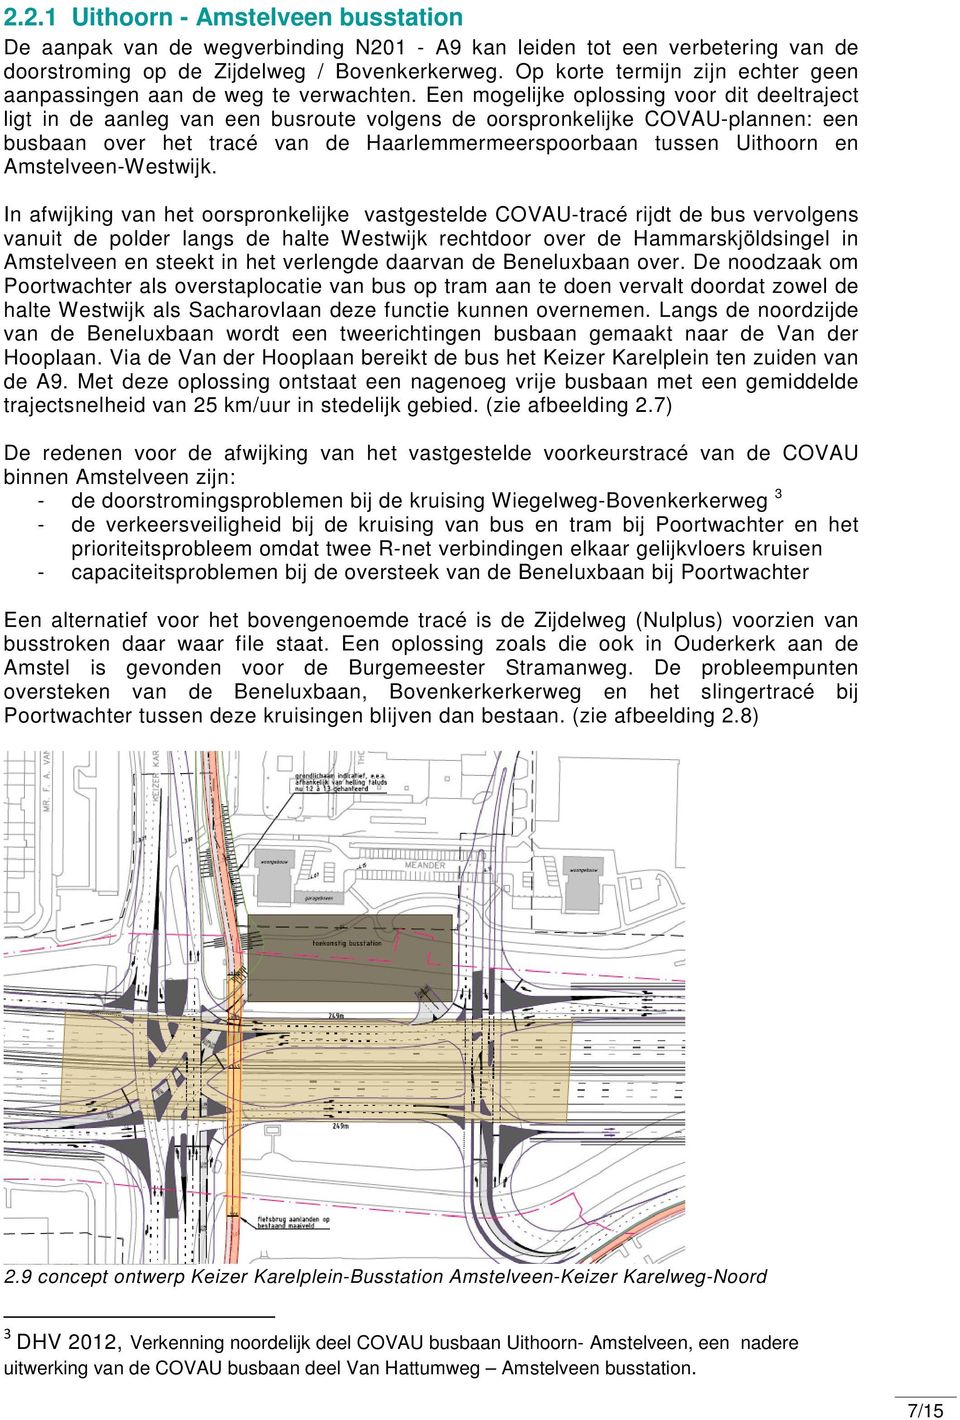 Een mogelijke oplossing voor dit deeltraject ligt in de aanleg van een busroute volgens de oorspronkelijke COVAU-plannen: een busbaan over het tracé van de Haarlemmermeerspoorbaan tussen Uithoorn en